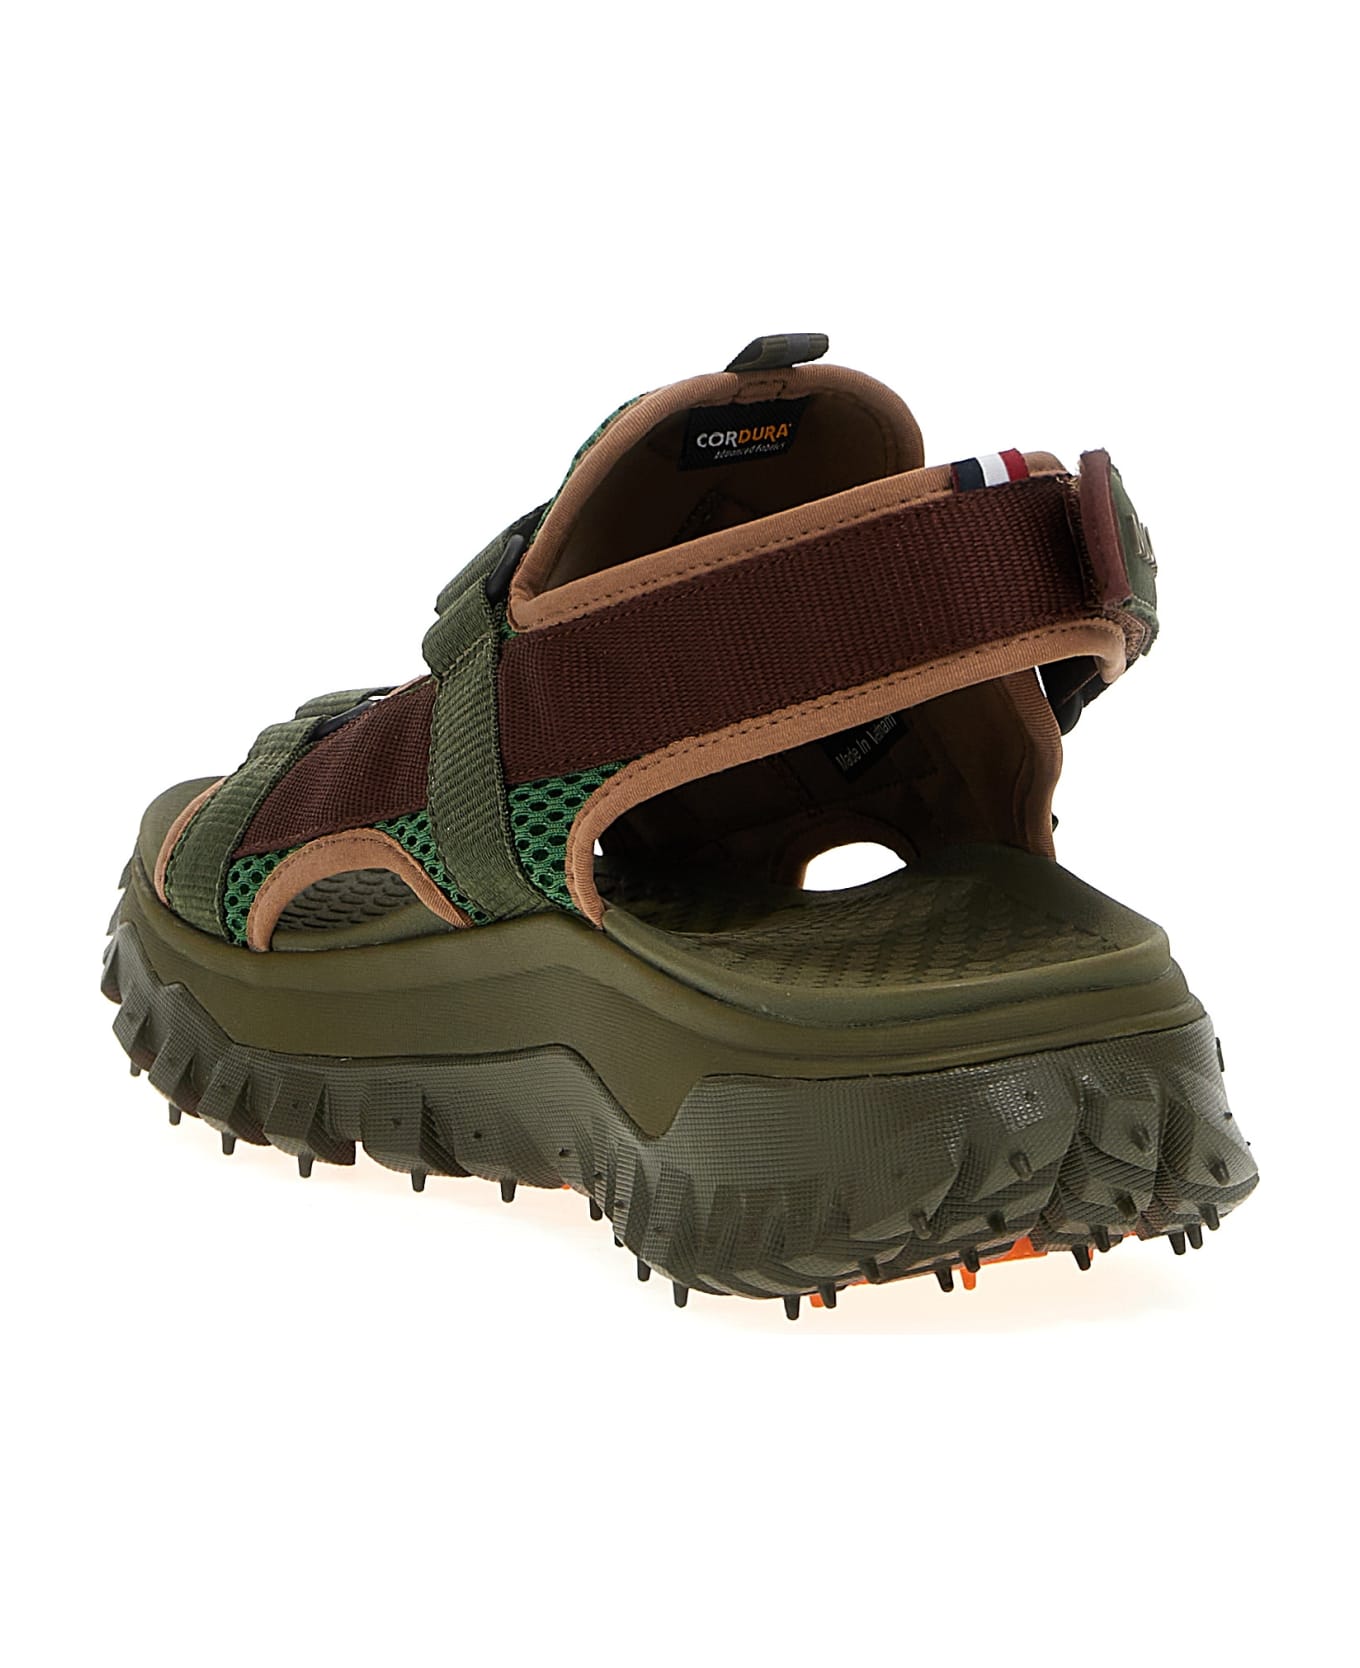 Moncler 'trailgrip Vela' Sandals - Multicolor その他各種シューズ